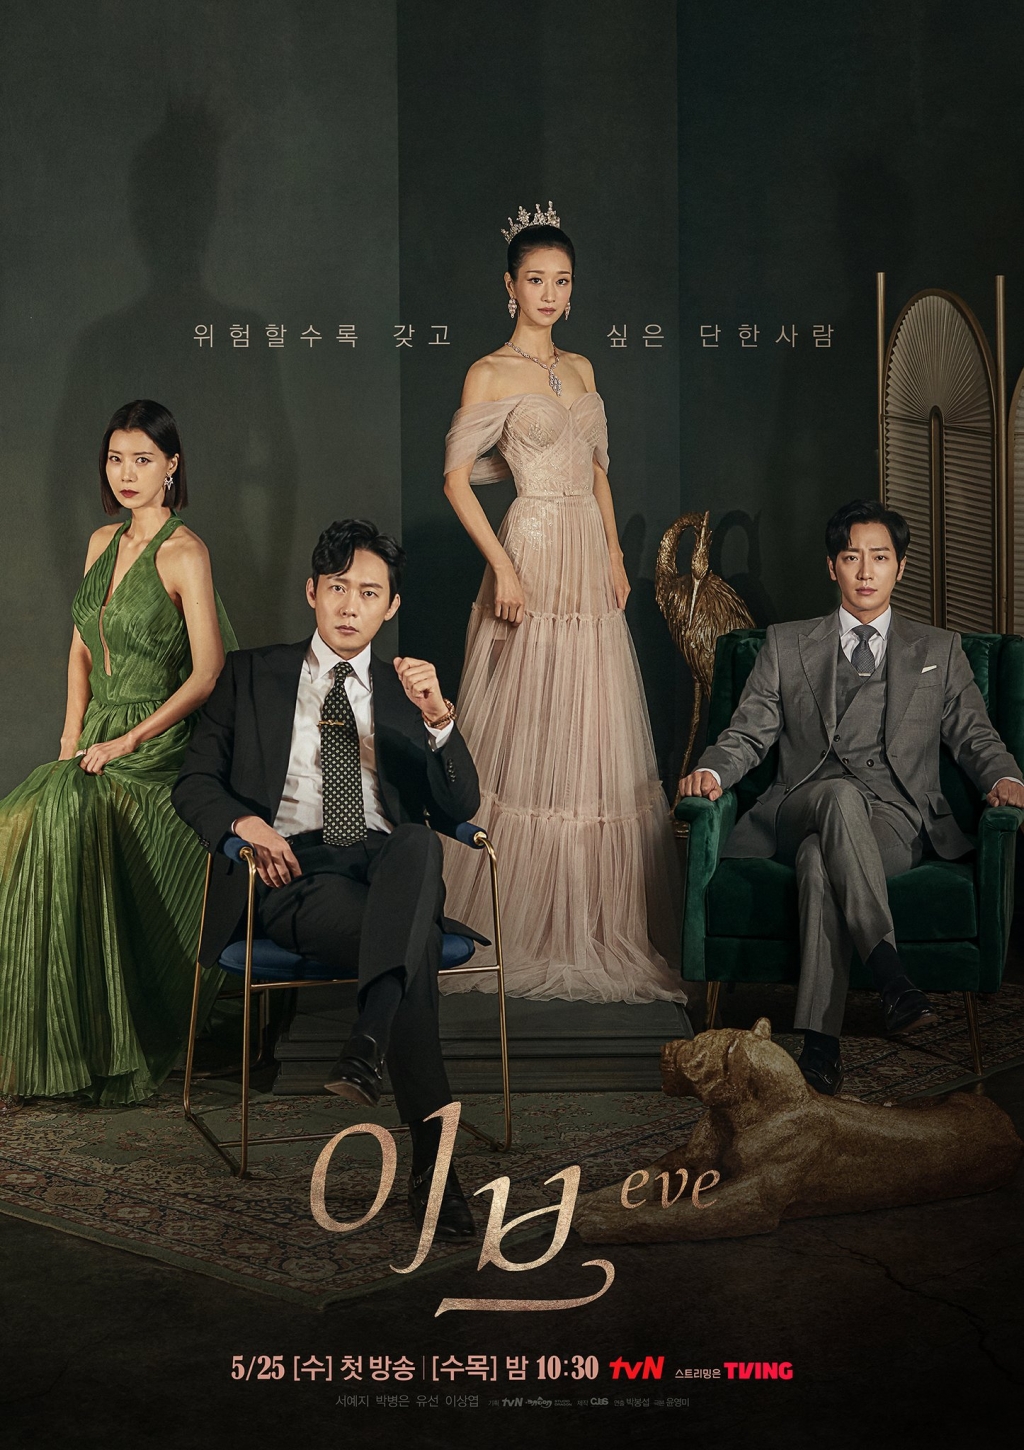 Poster phim mới ‘Eve’: Seo Ye Ji vừa quyến rũ vừa bí ẩn, hé lộ tham vọng muốn lợi dụng tình yêu để báo thù